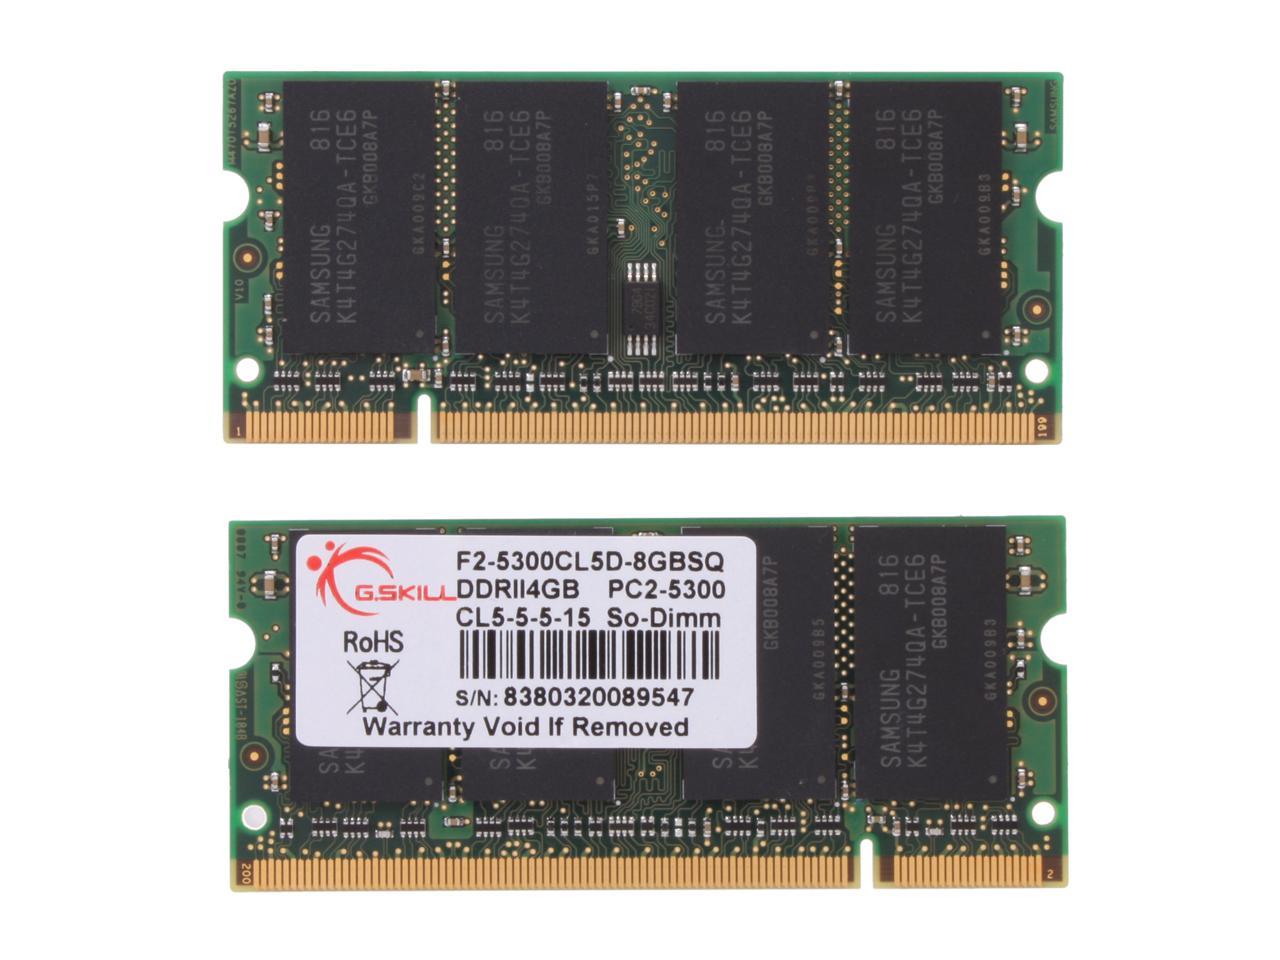 G.SKILL 8GB (2 x 4GB) 200-Pin DDR2 SO-DIMM DDR2 667 (PC2 5300) Laptop